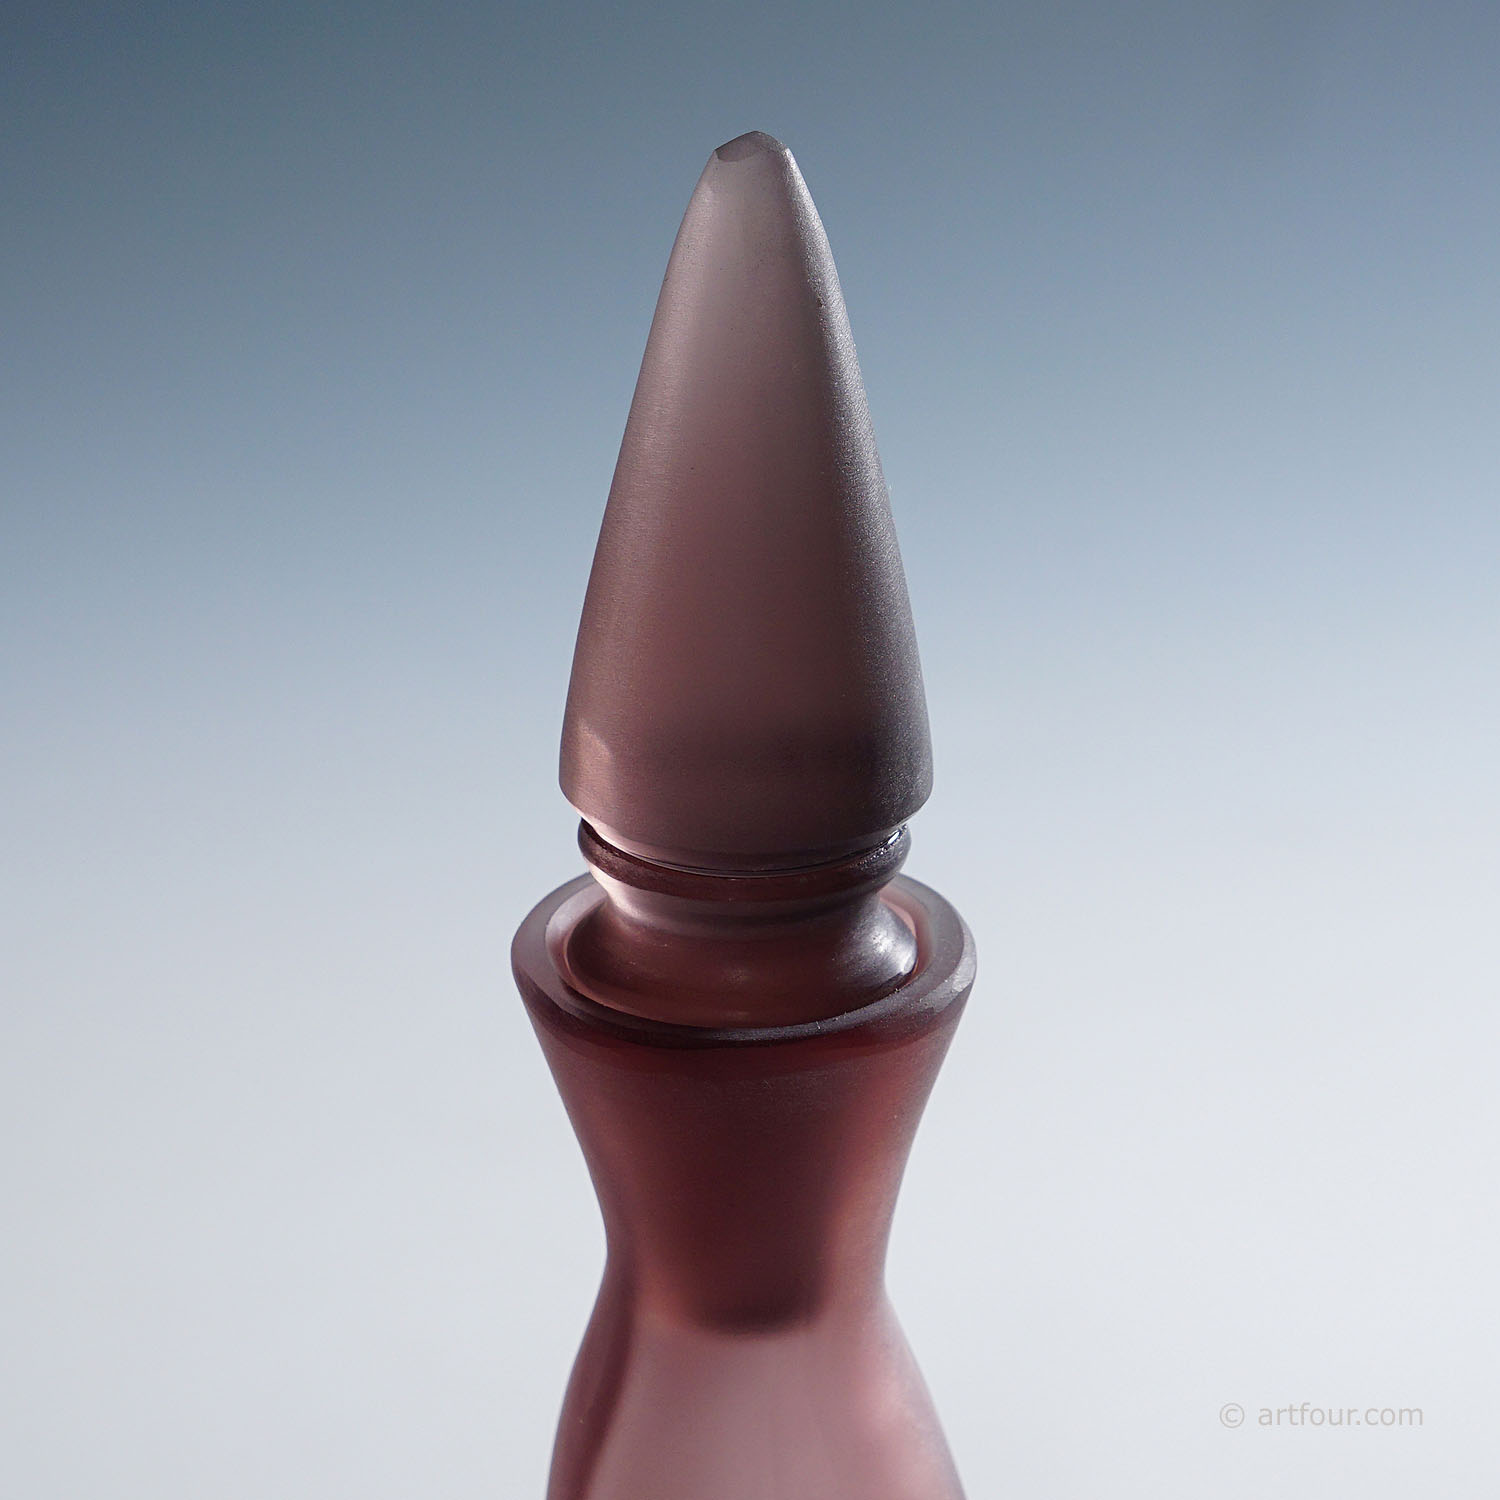 Paolo Venini Inciso Glass Bottle Manufactured by Venini 1990s